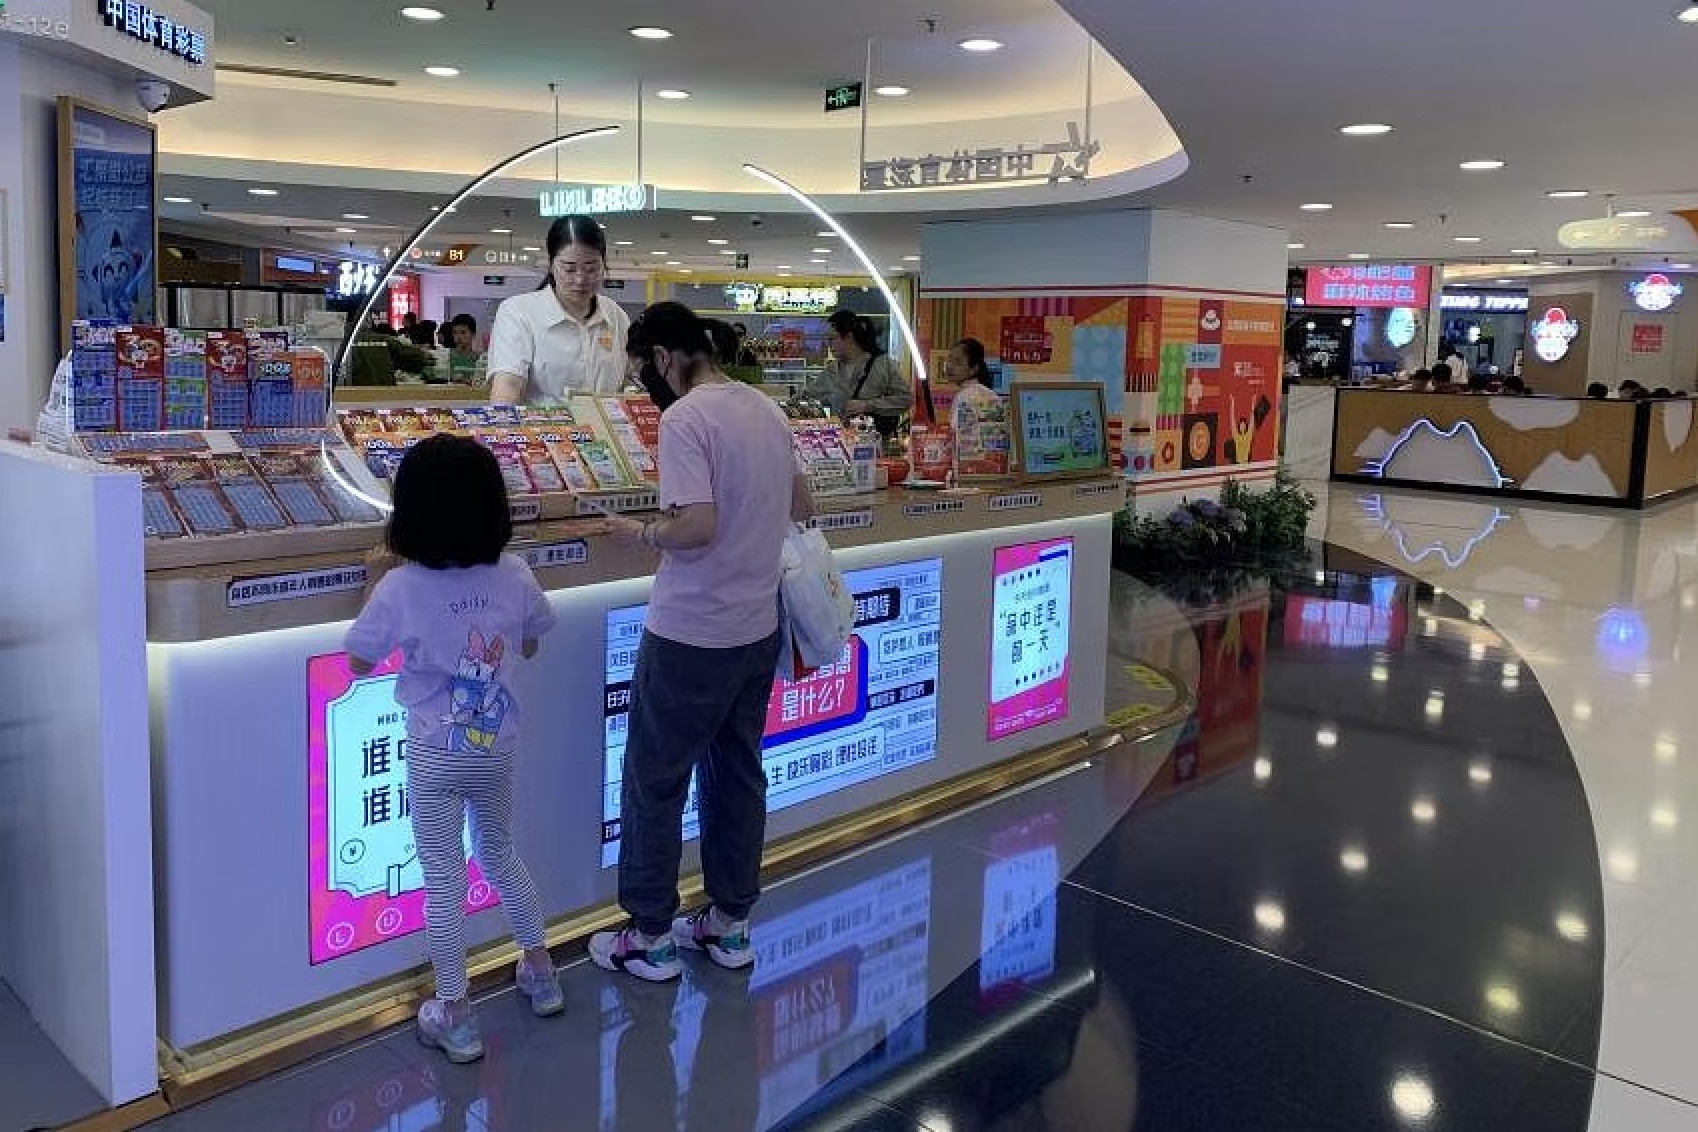 Gian hàng bán xổ số tại một trung tâm thương mại ở Trung Quốc - Ảnh: THE STRAITS TIMES